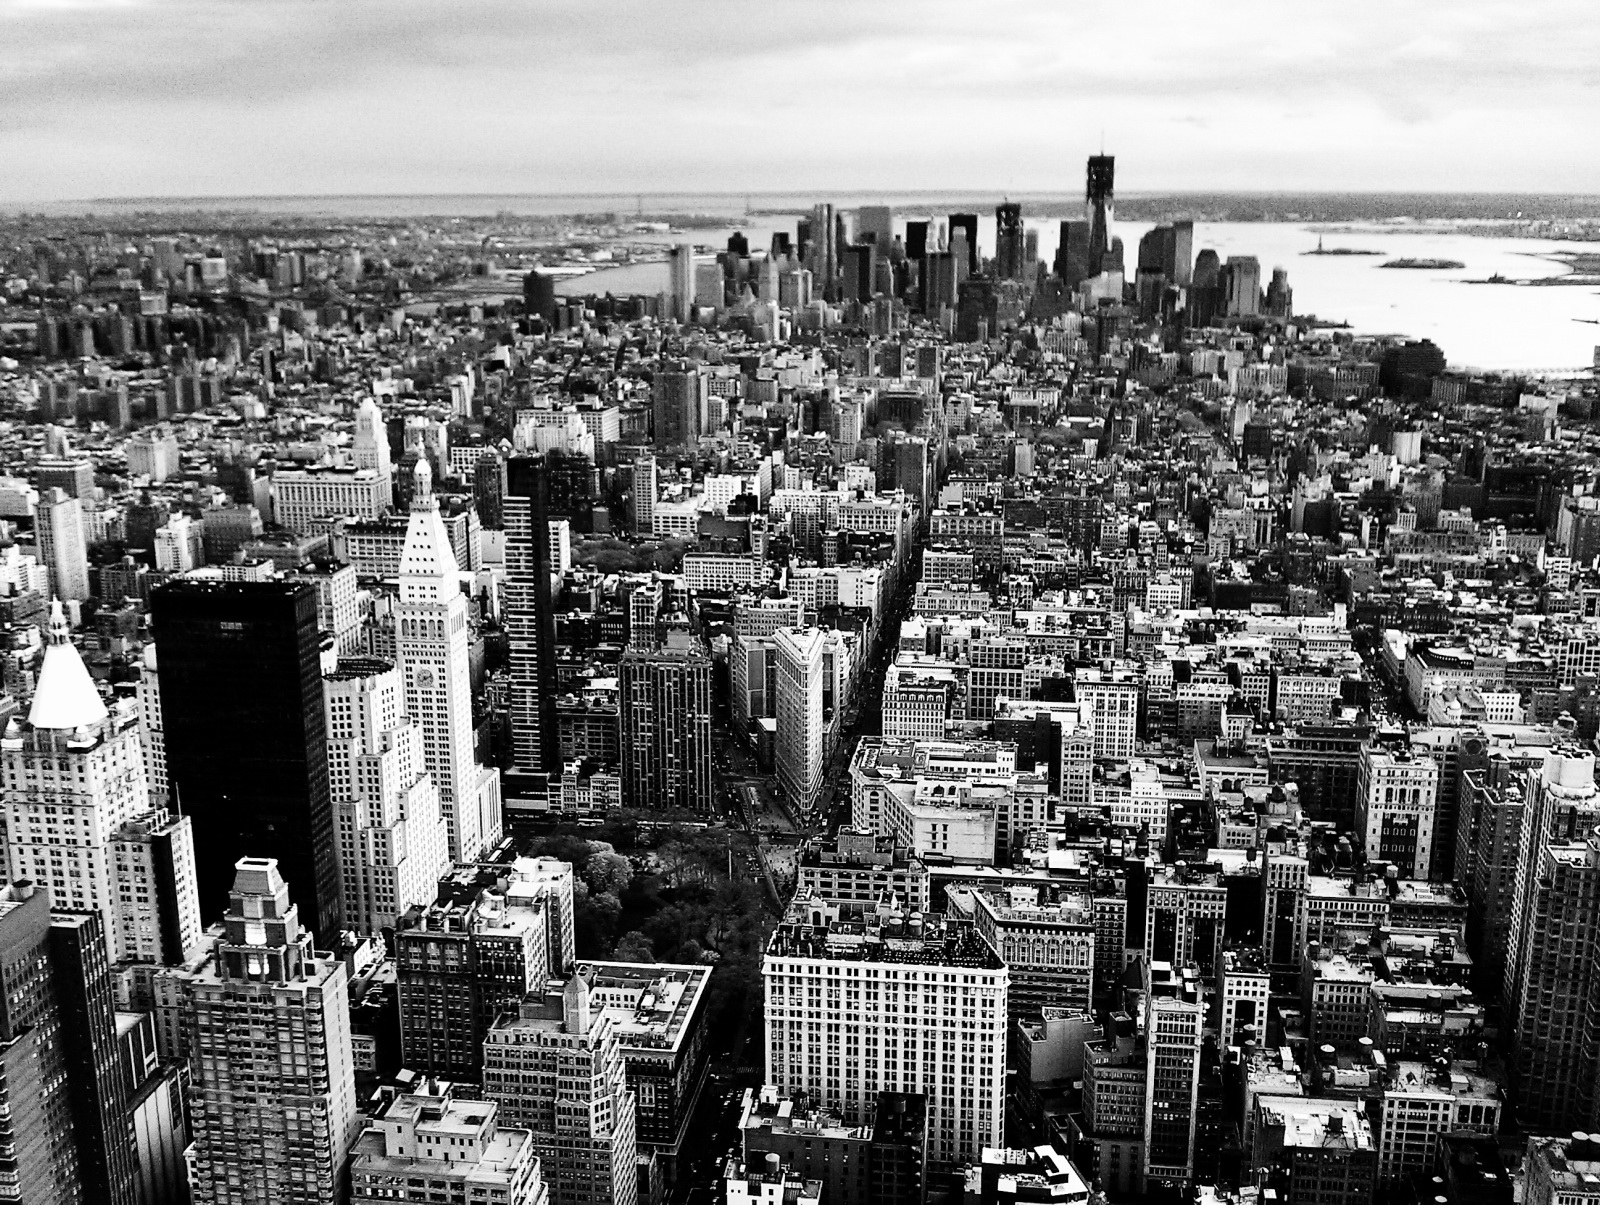 無料写真素材 建築物 町並み 都市 街 モノクロ 風景アメリカ合衆国 アメリカ合衆国ニューヨーク画像素材なら 無料 フリー写真素材のフリーフォト